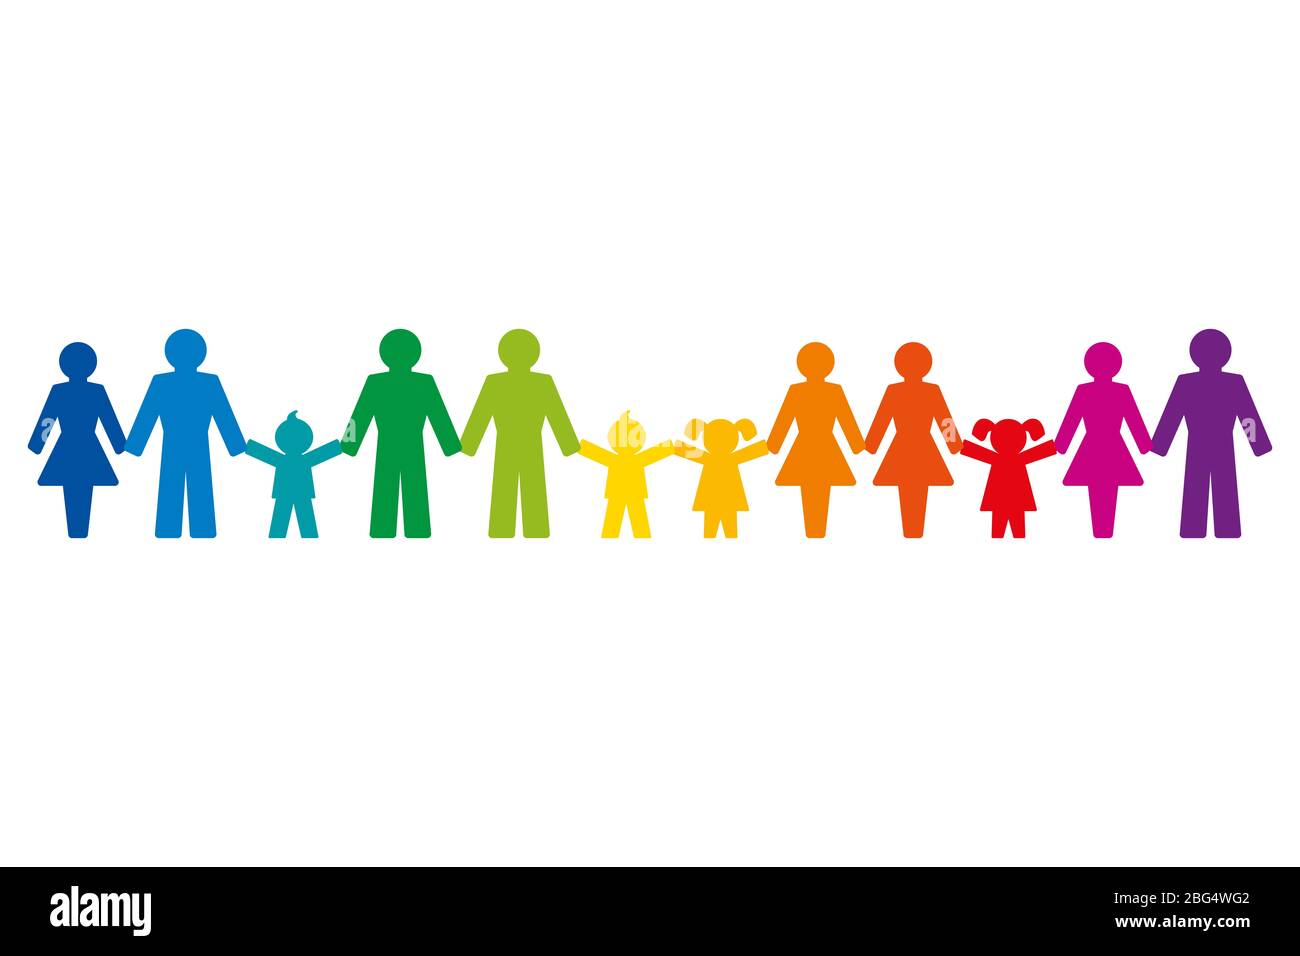 Regenbogenfarbene Piktogramme von Menschen, die die Hände halten, stehen in einer Reihe. Abstrakte Symbole verbundener Menschen, die Freundschaft, Liebe und Harmonie ausdrücken. Stockfoto